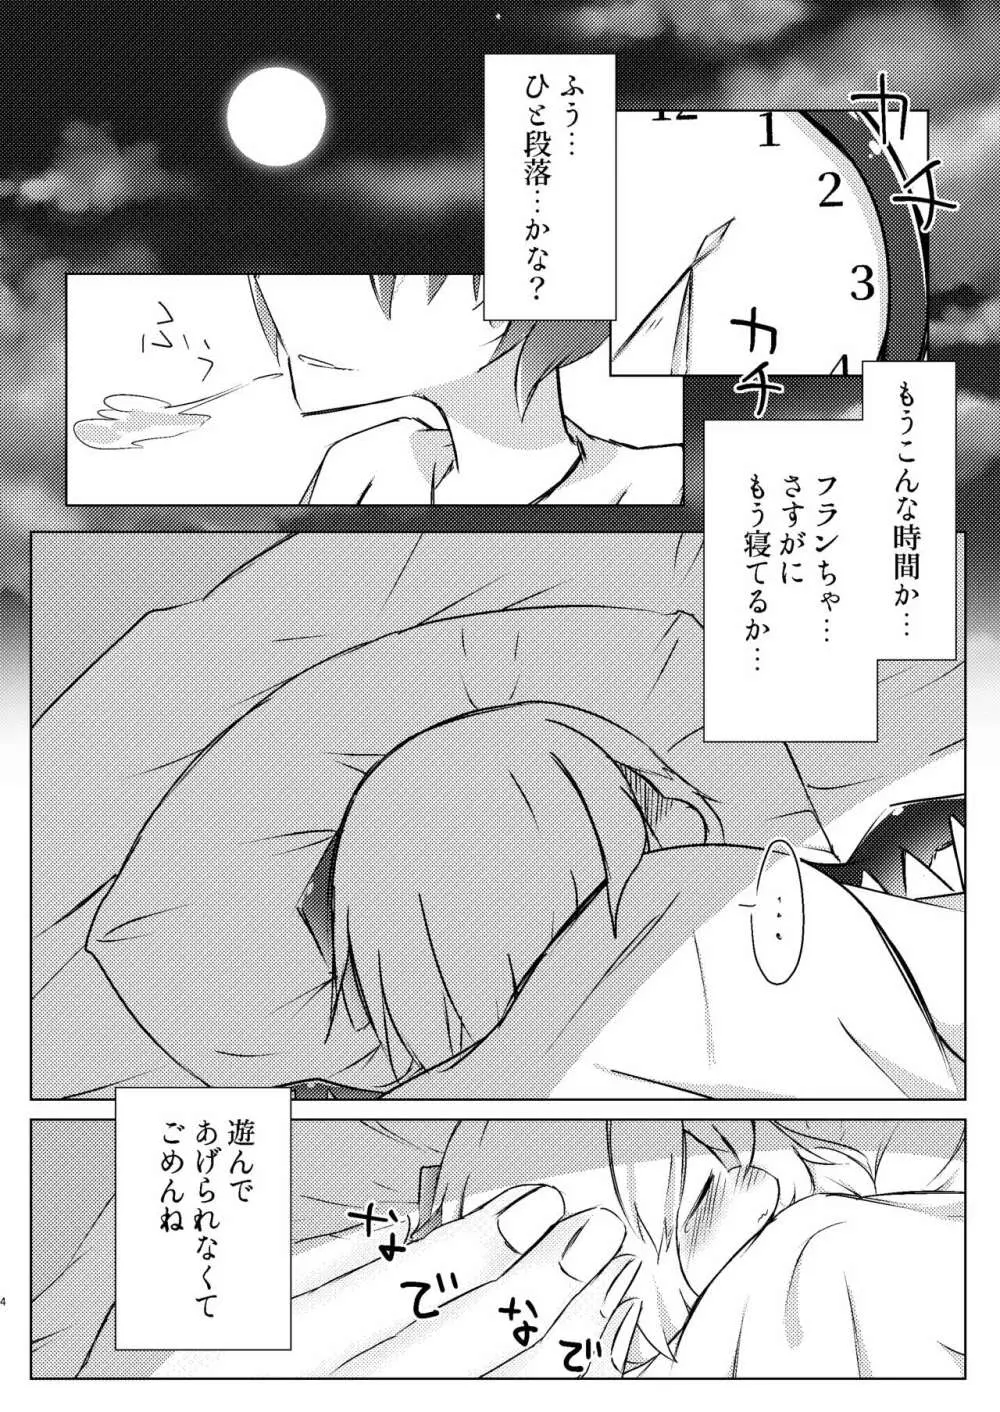 Sleep - page4